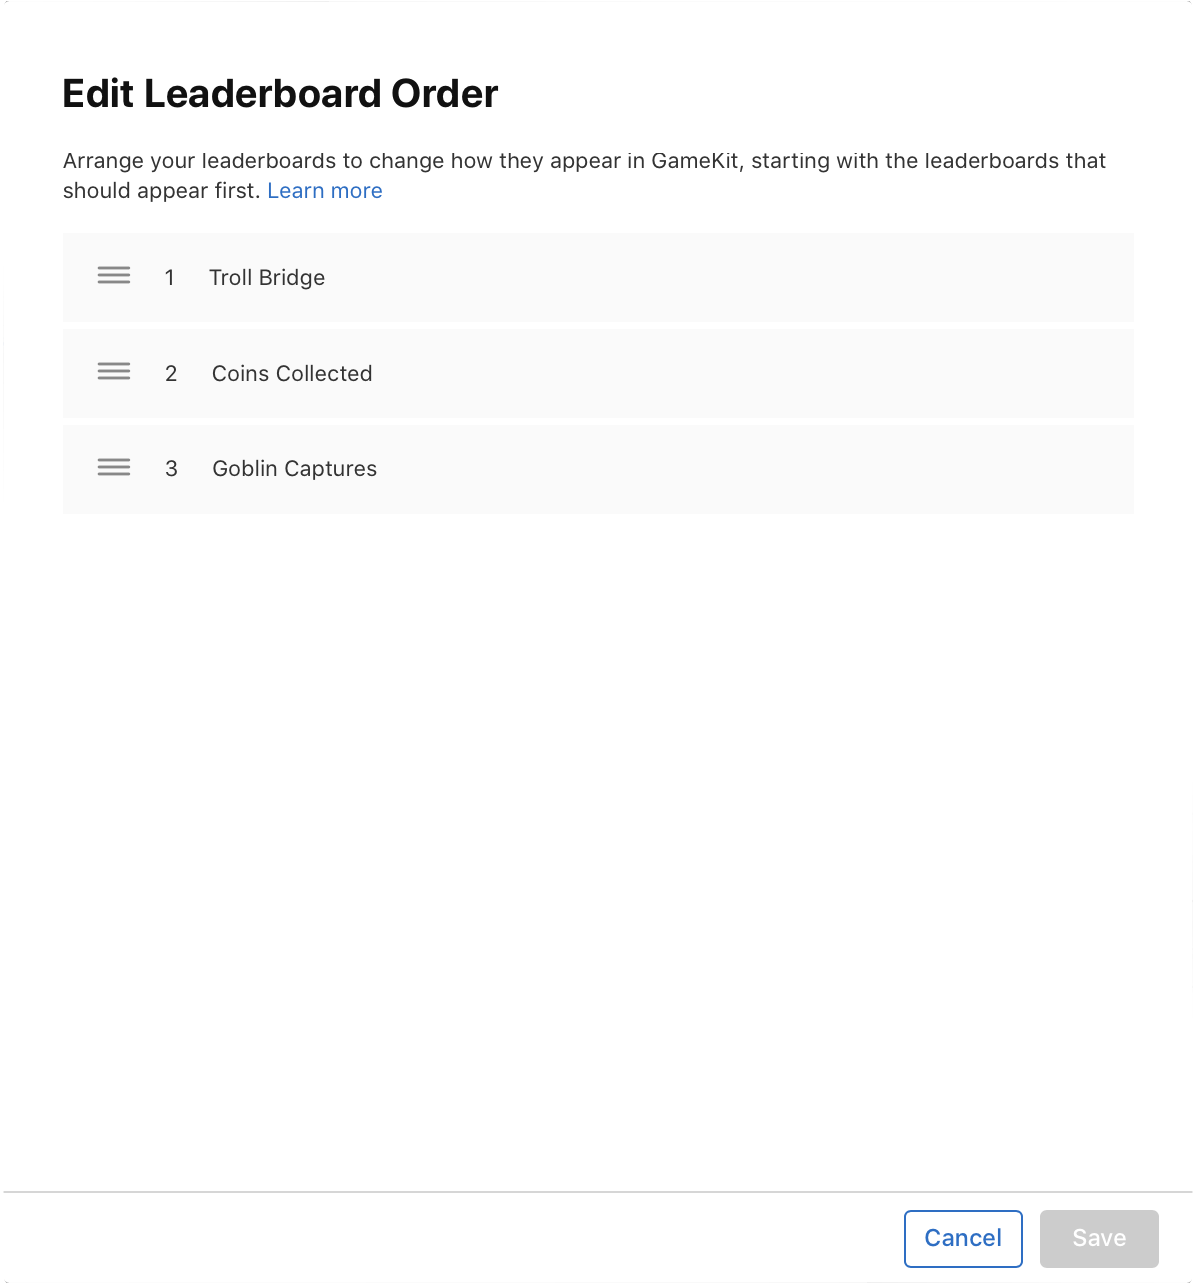 Arrange leaderboards